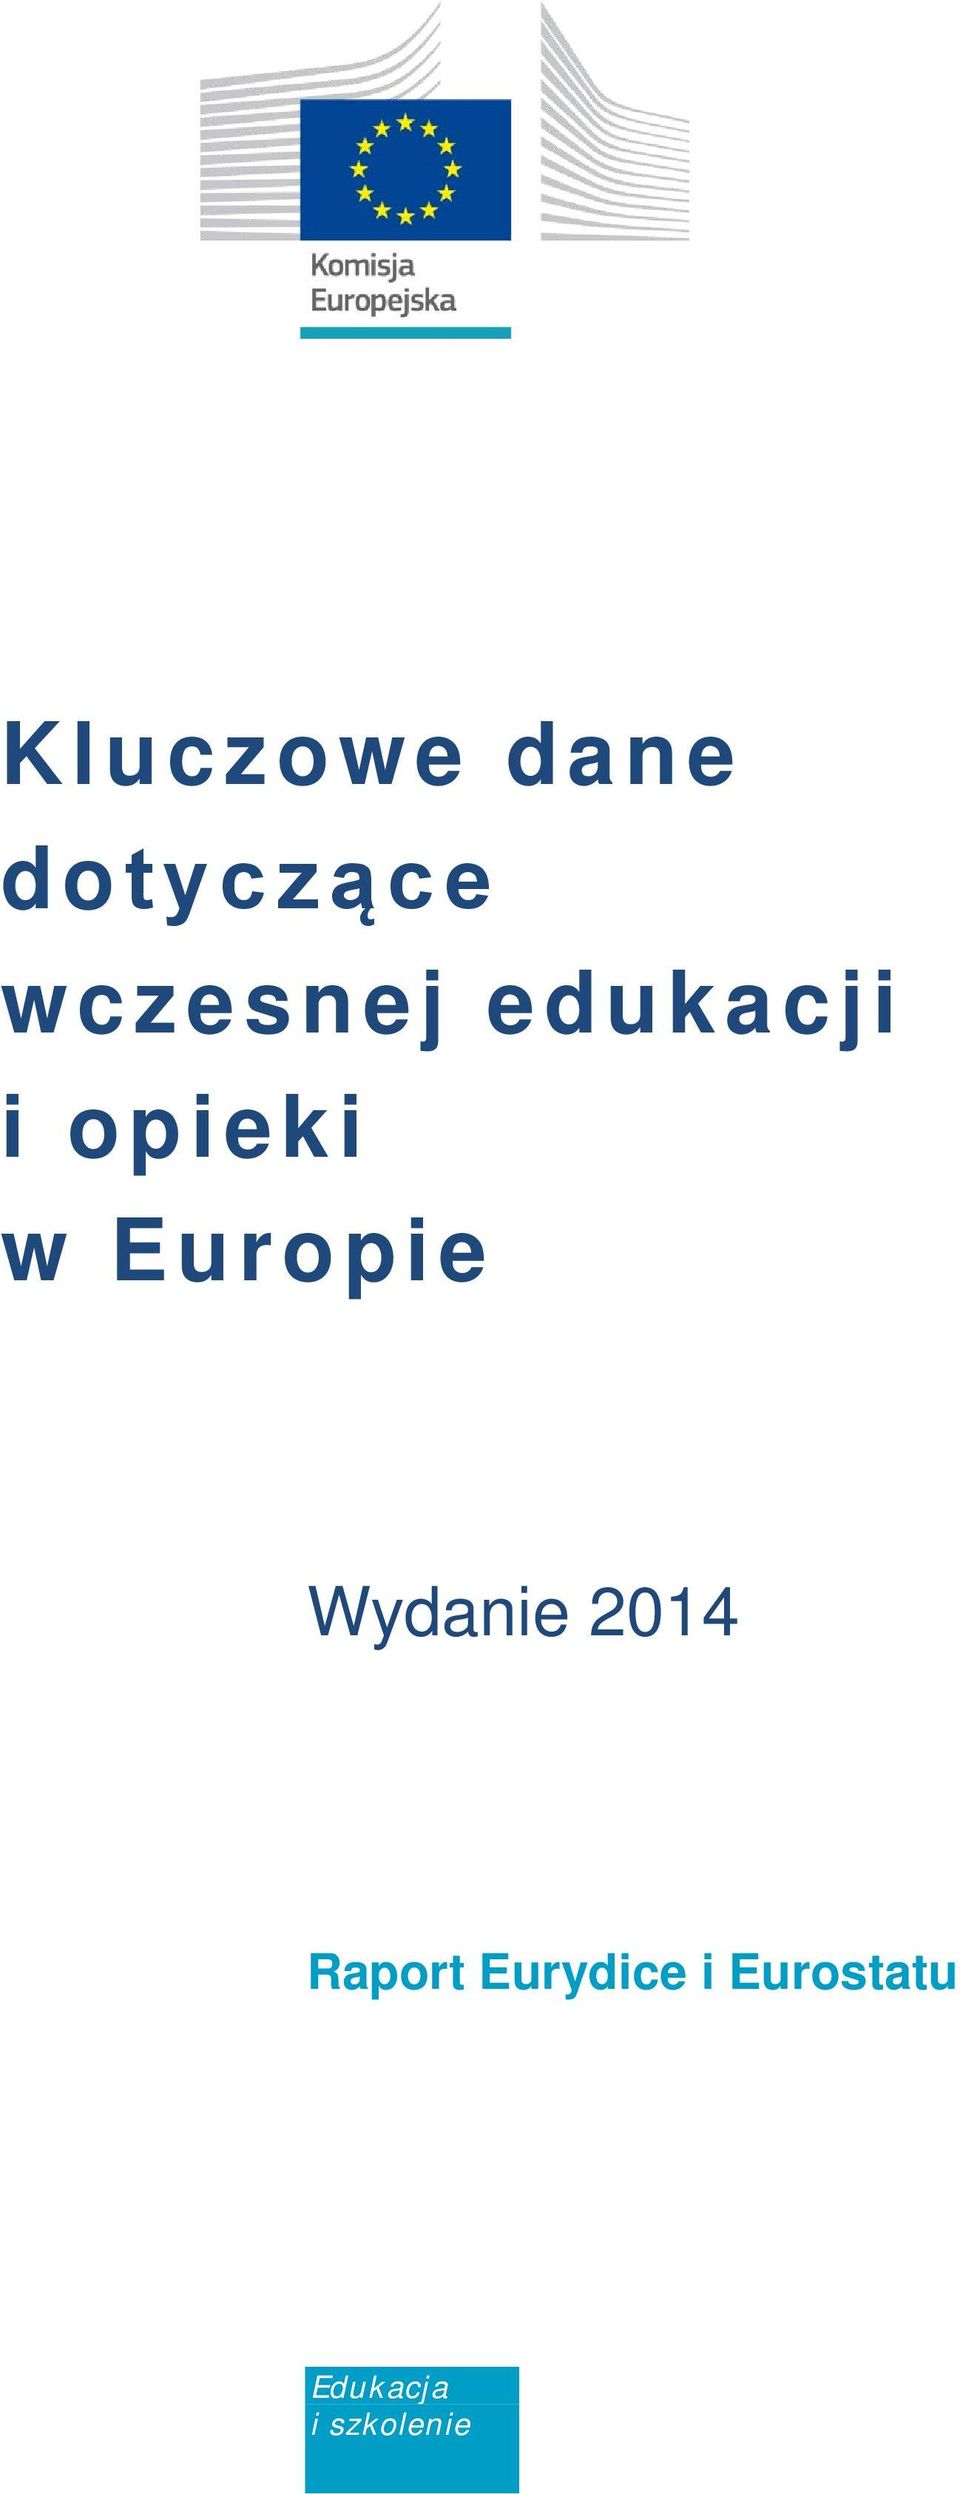 Europie Wydanie 2014 Raport